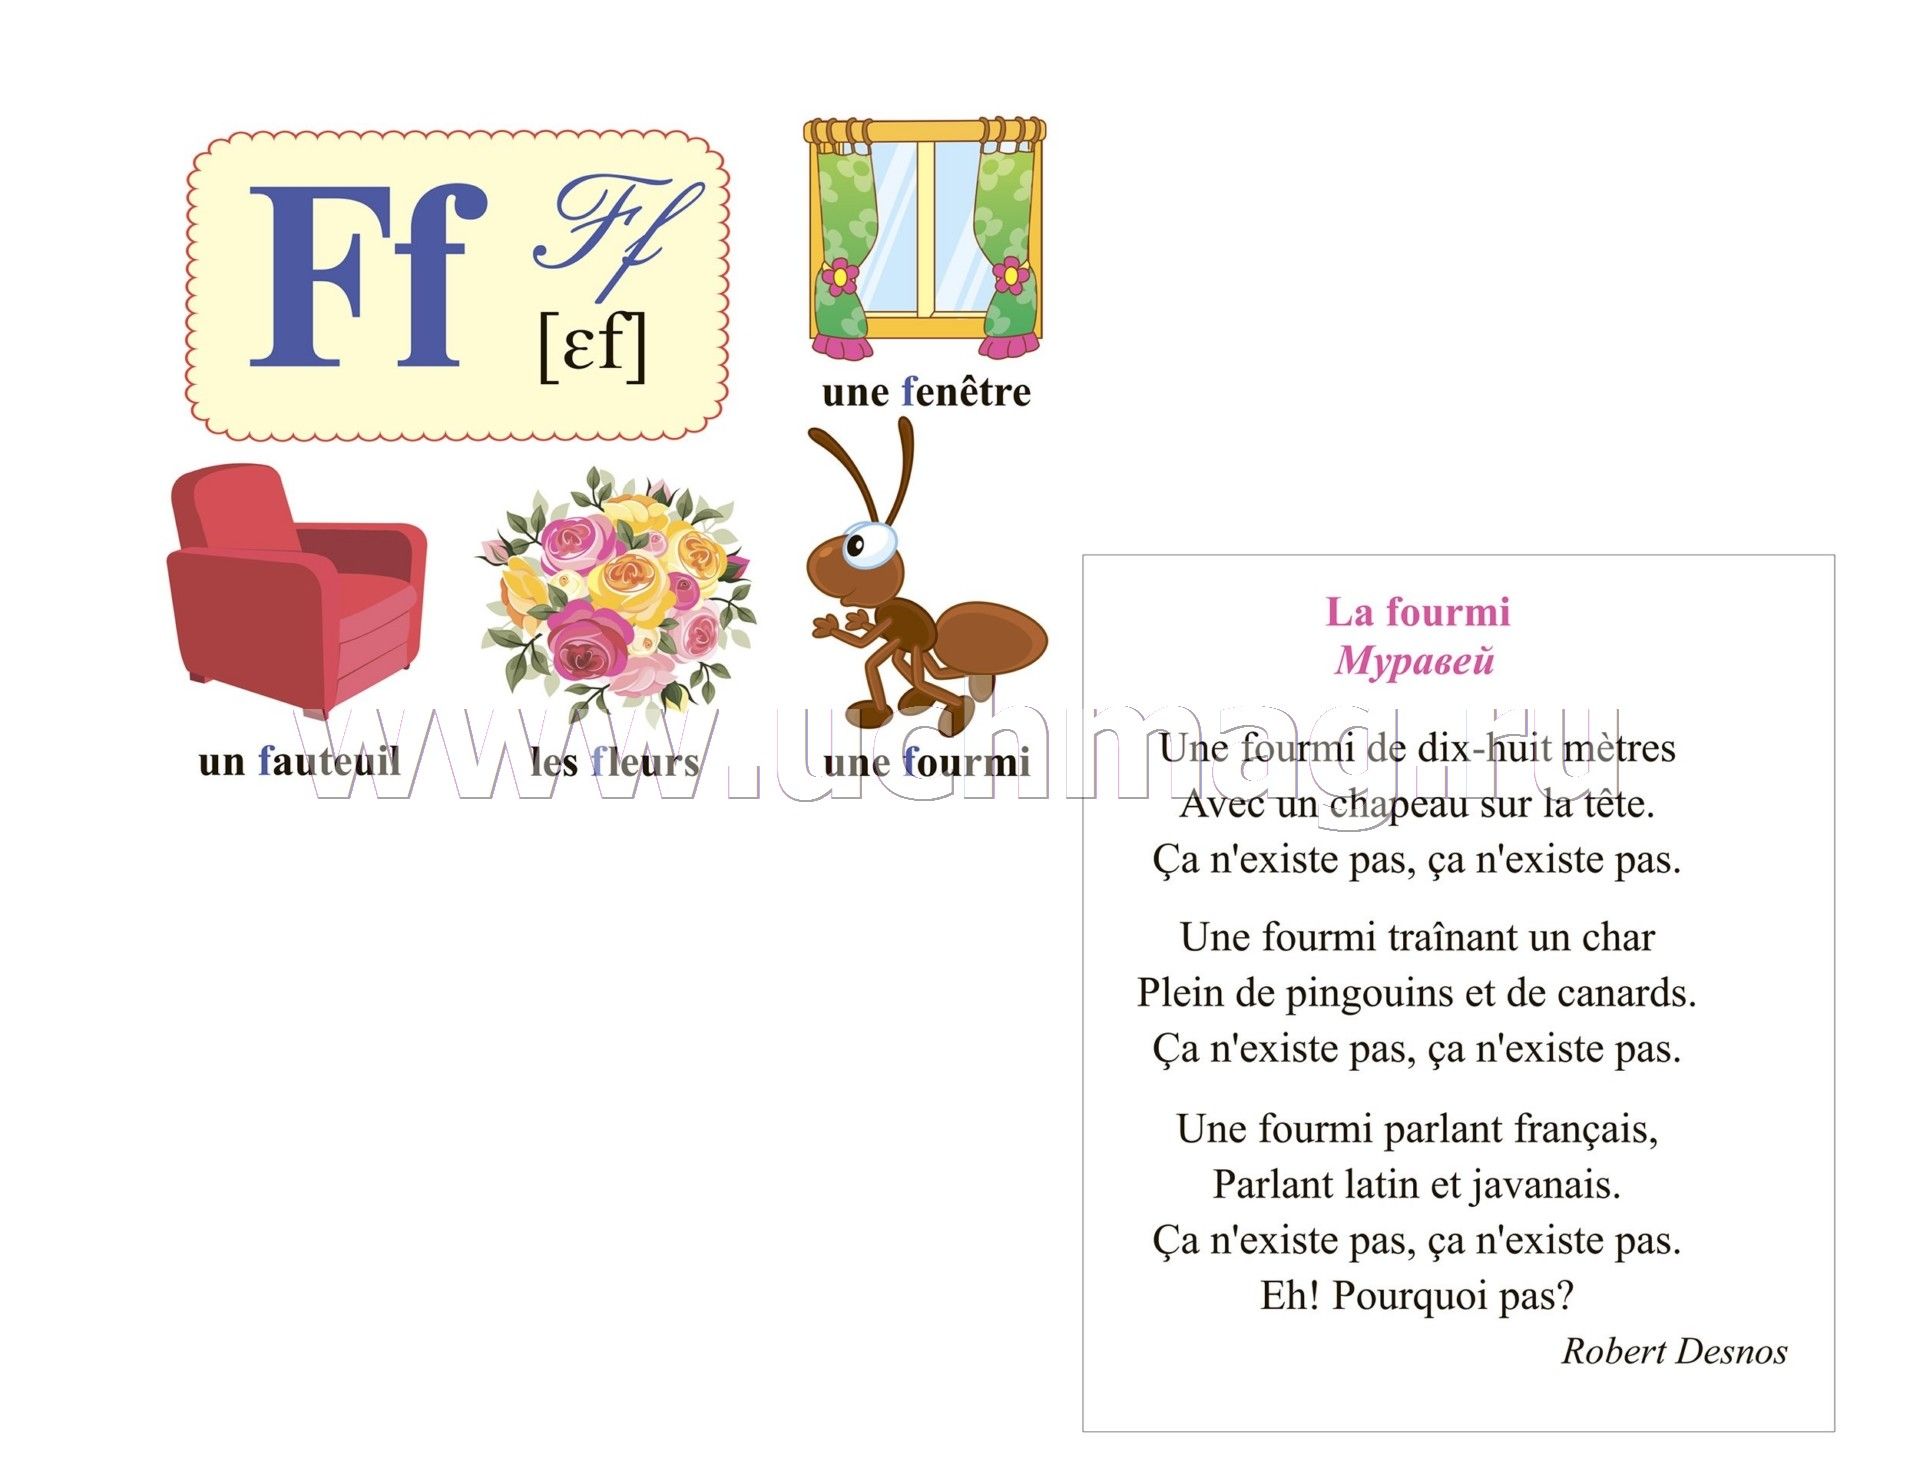 Французский алфавит в картинках png и jpg